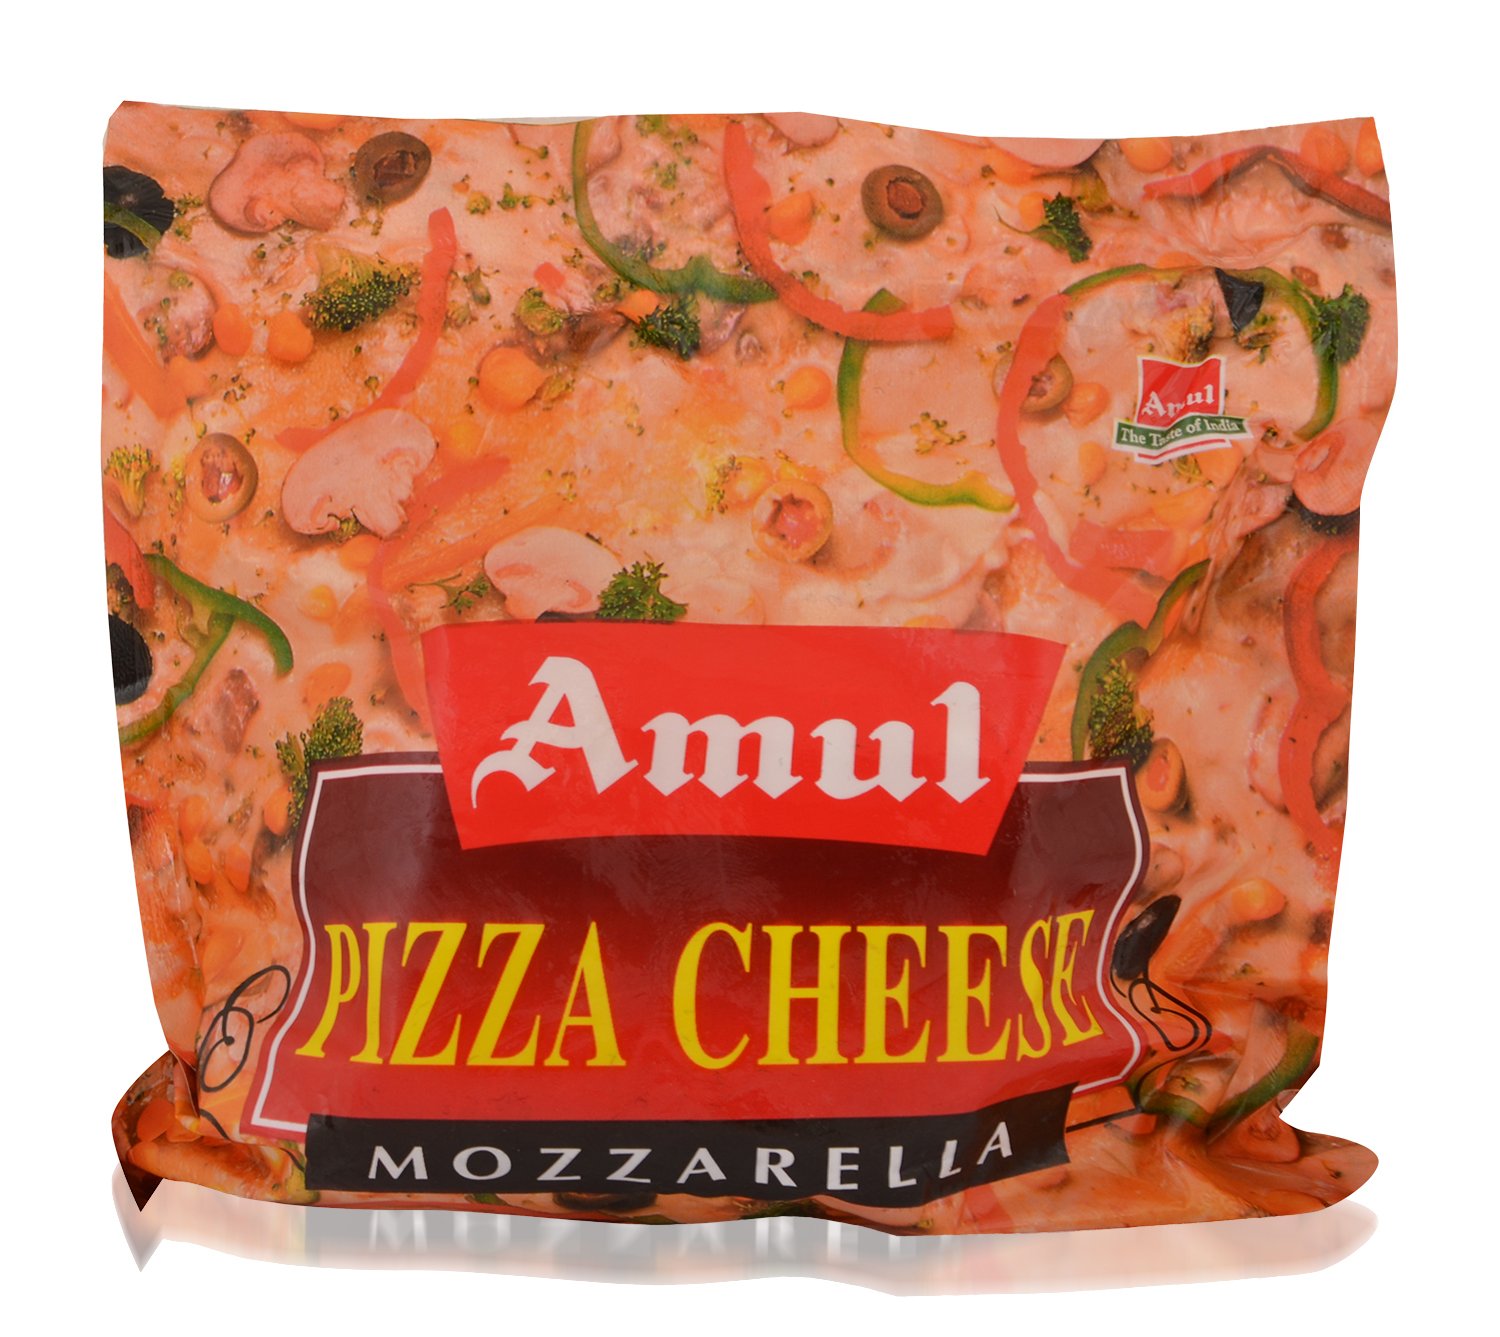 Amul Pizza Cheese – Mozzarella, 200g Pouch